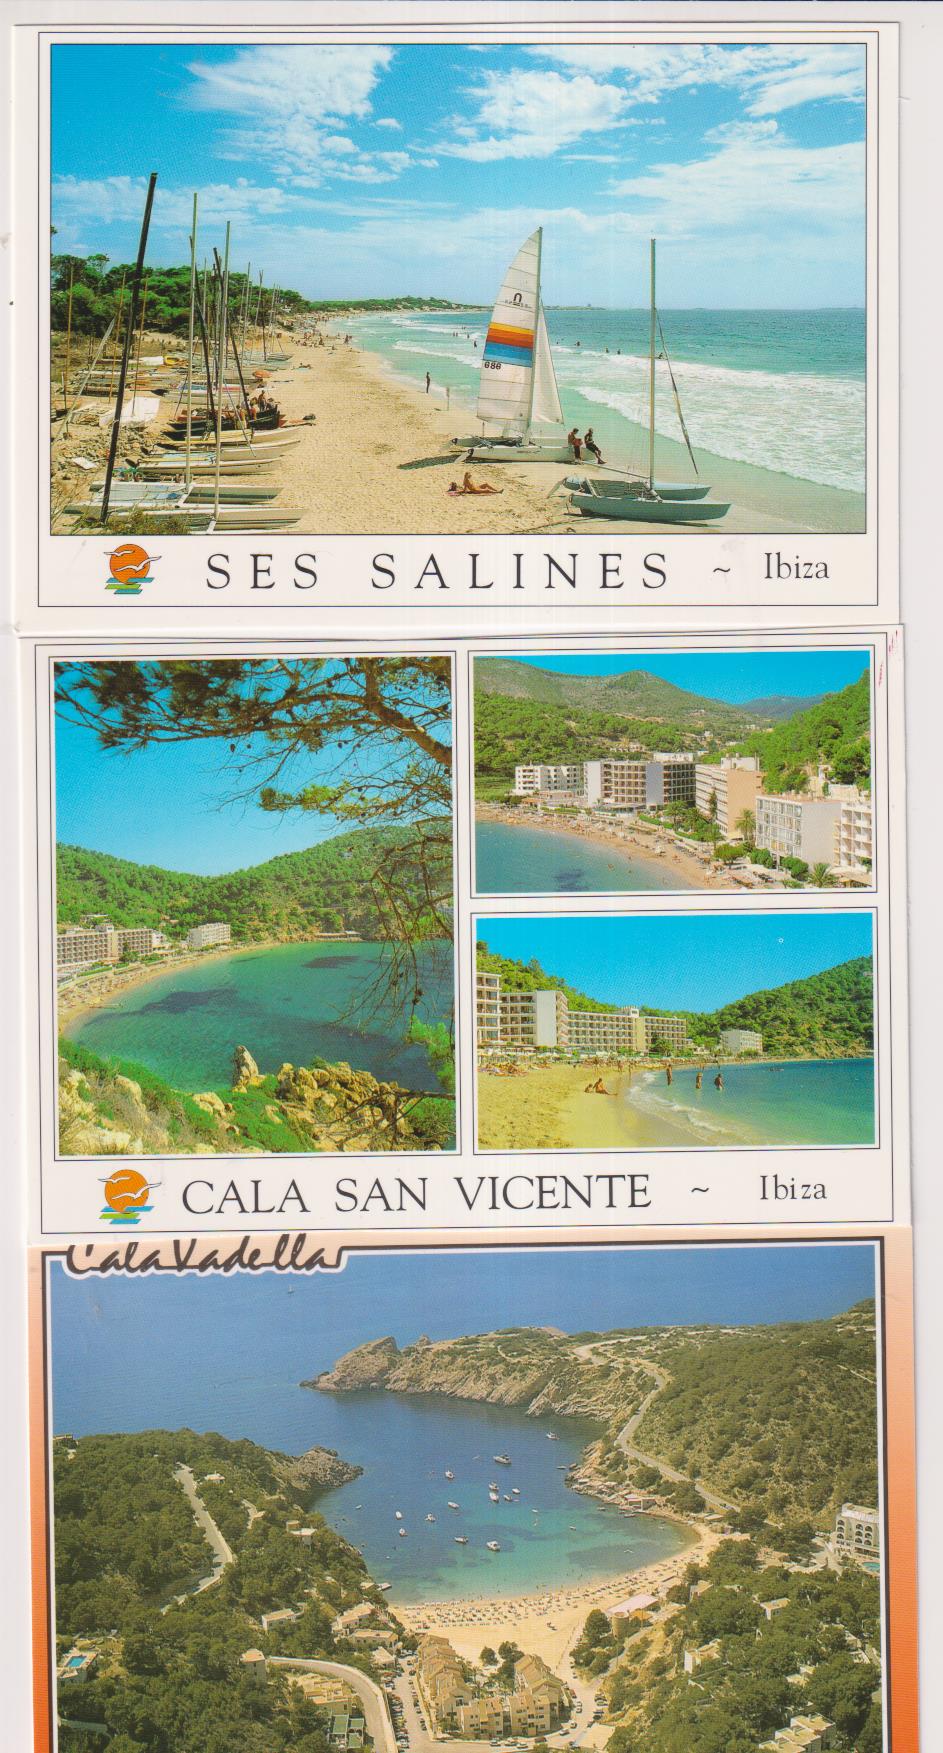 Ibiza.- Lote de 3 Postales: Ses Salines y Cala San Vicente (2)